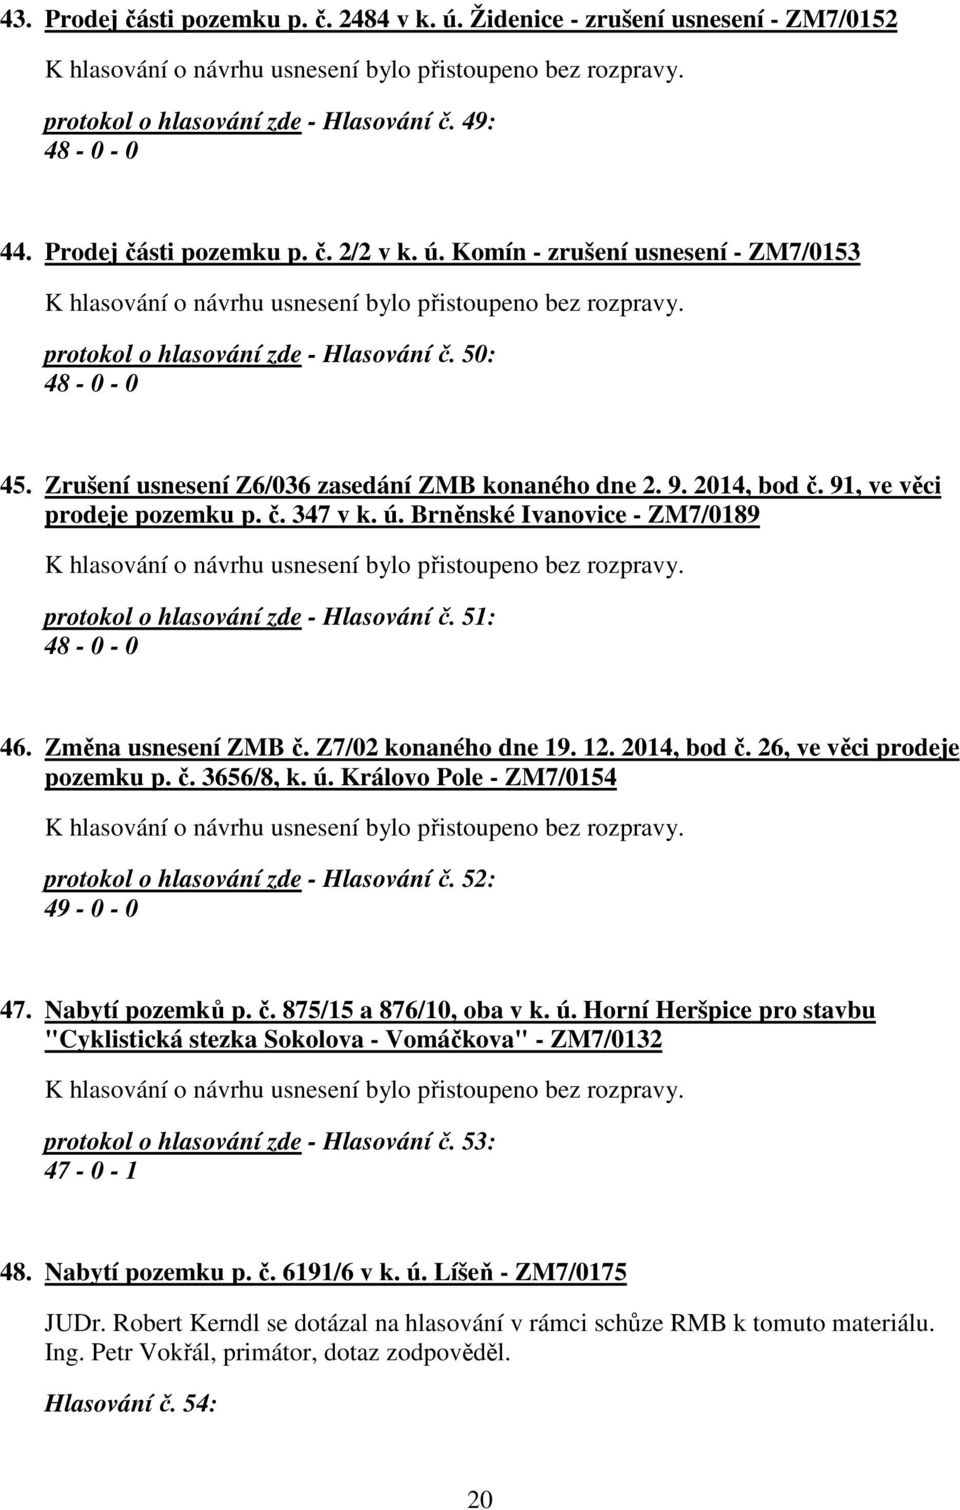 Brněnské Ivanovice - ZM7/0189 protokol o hlasování zde - Hlasování č. 51: 48-0 - 0 46. Změna usnesení ZMB č. Z7/02 konaného dne 19. 12. 2014, bod č. 26, ve věci prodeje pozemku p. č. 3656/8, k. ú.